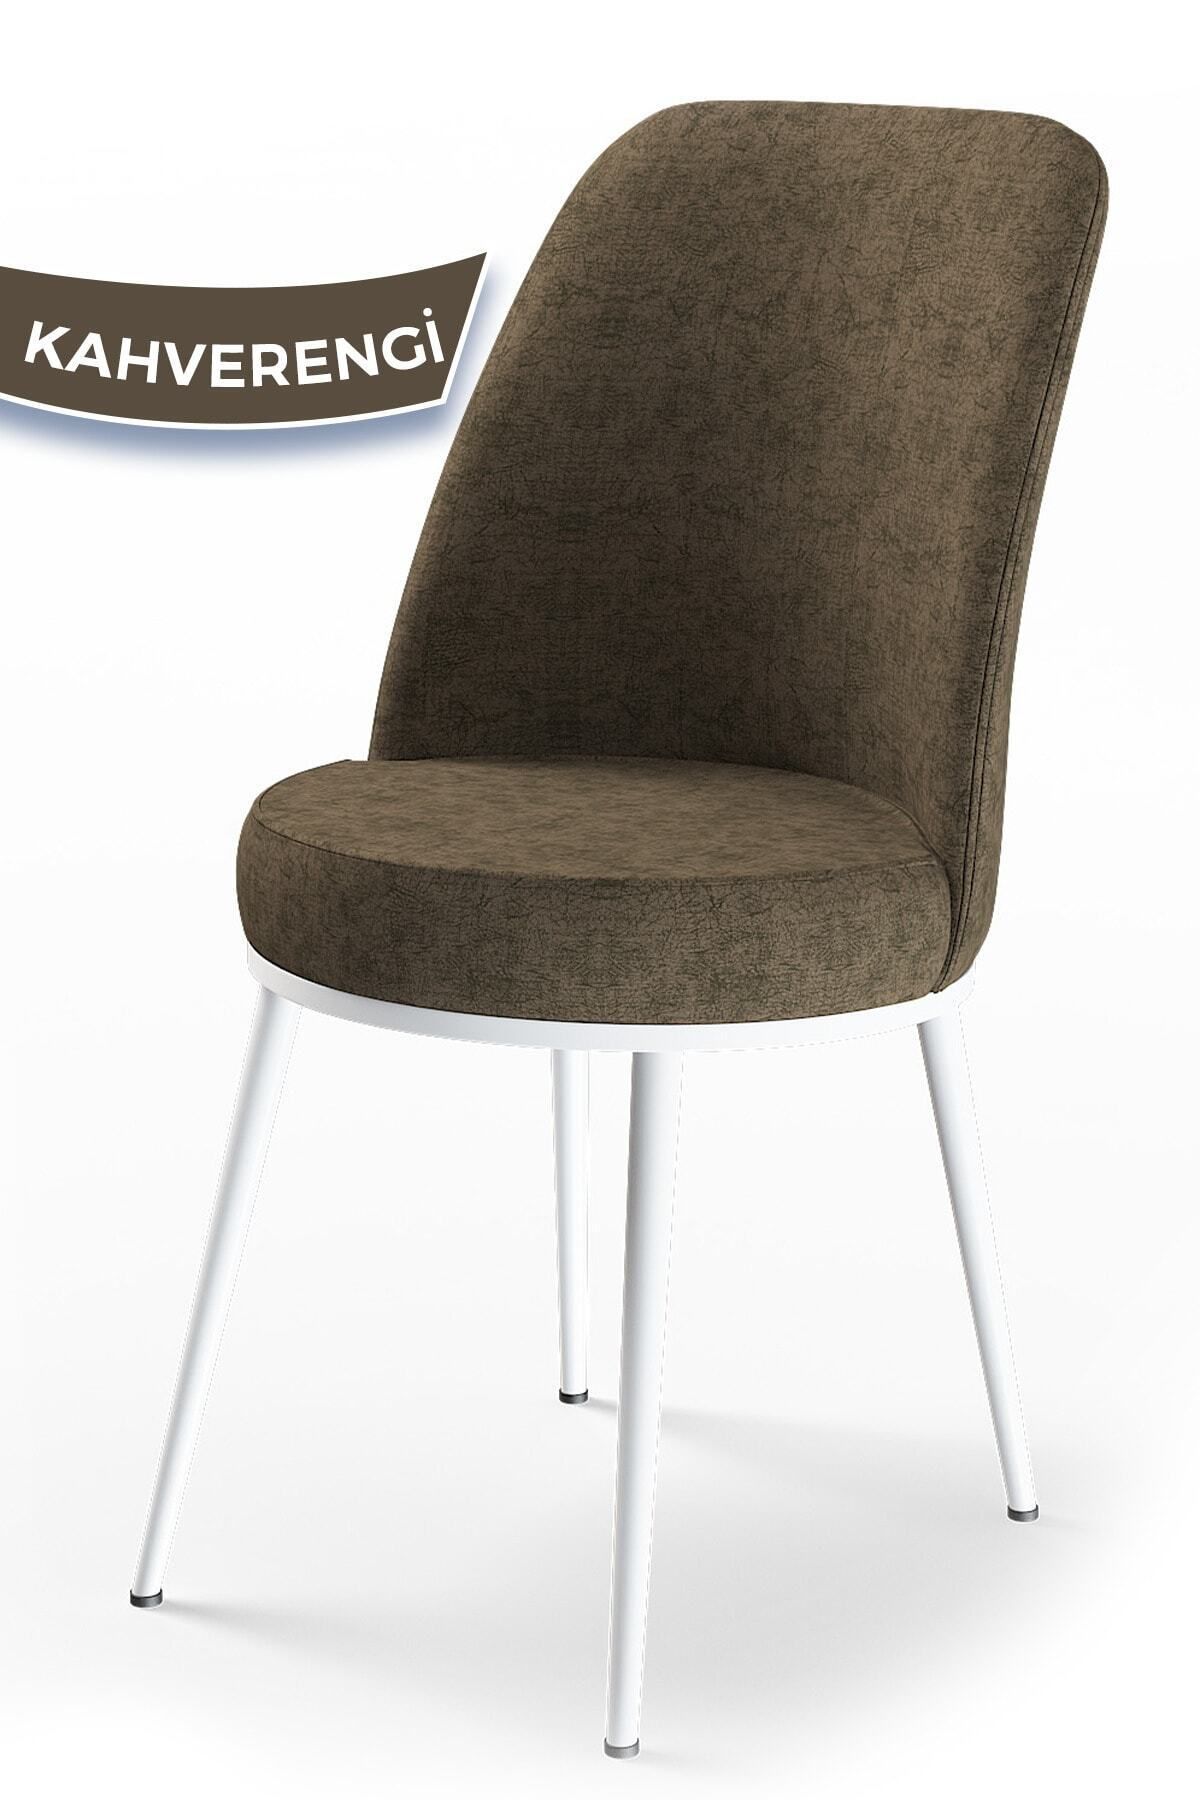 Canisa Concept Dexa Serisi Kahverengi Renk Sandalye Mutfak Sandalyesi, Yemek Sandalyesi Ayaklar Beyaz